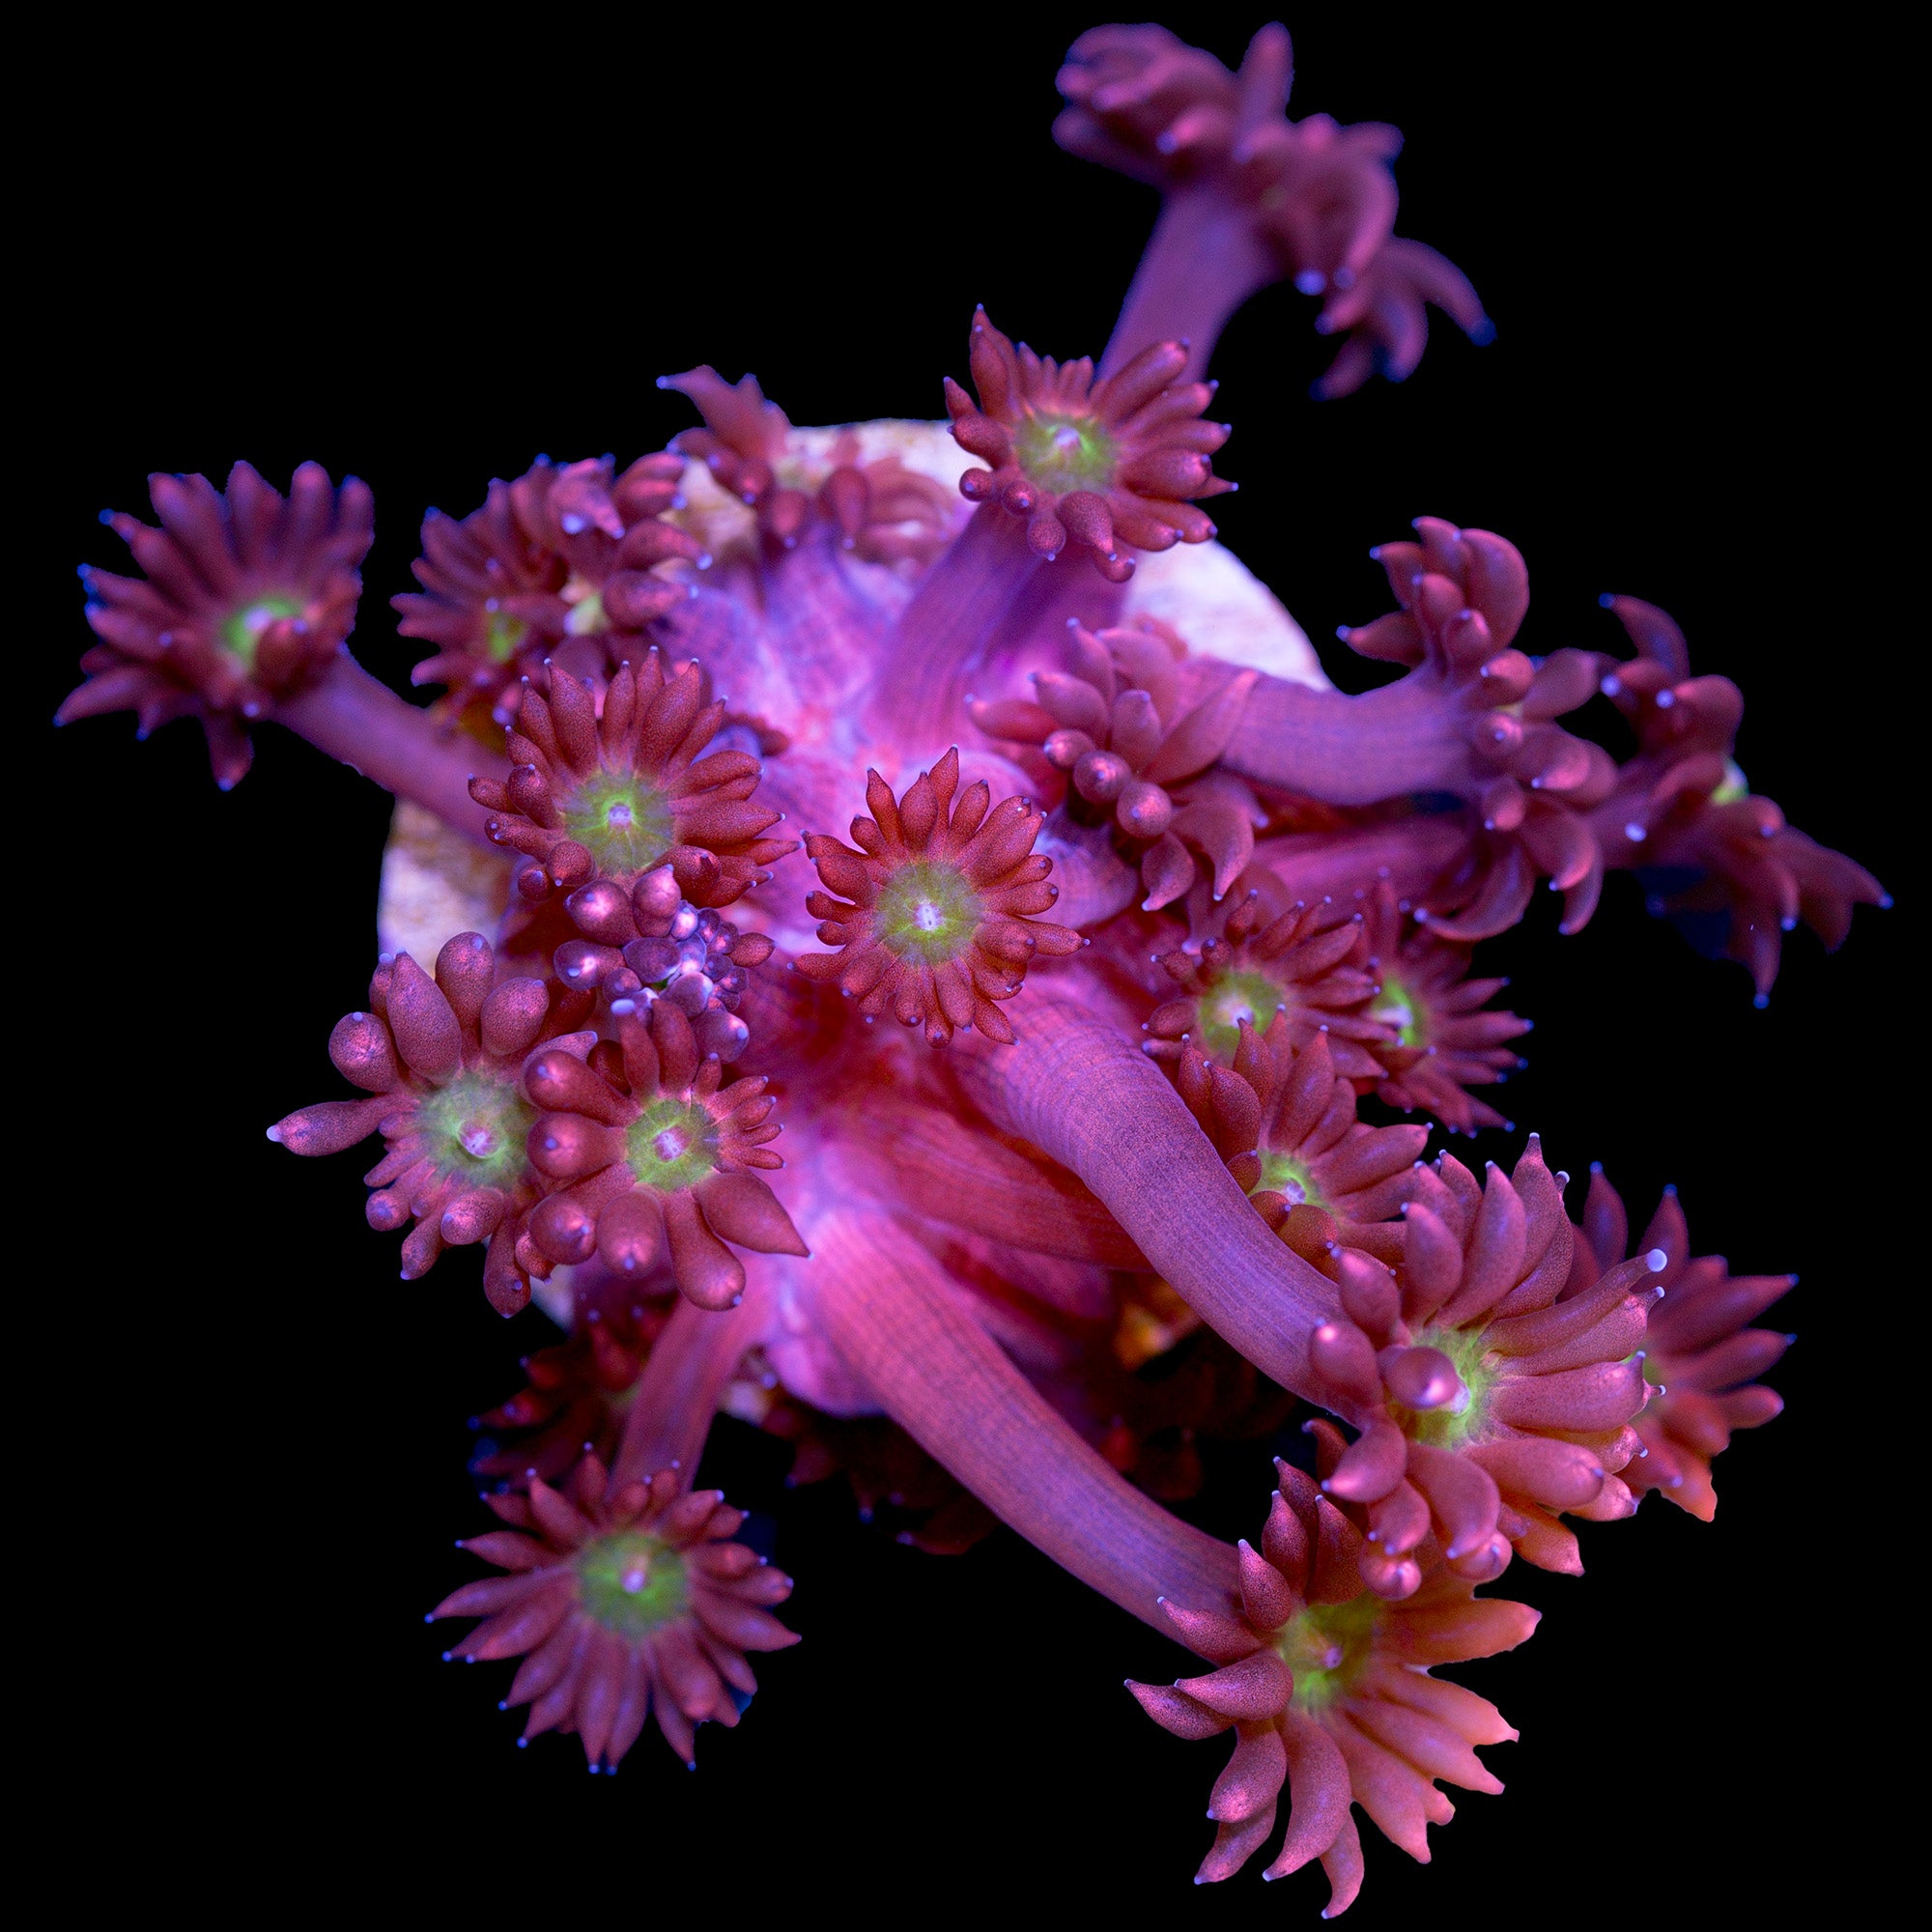 Alice's Red Goniopora Coral